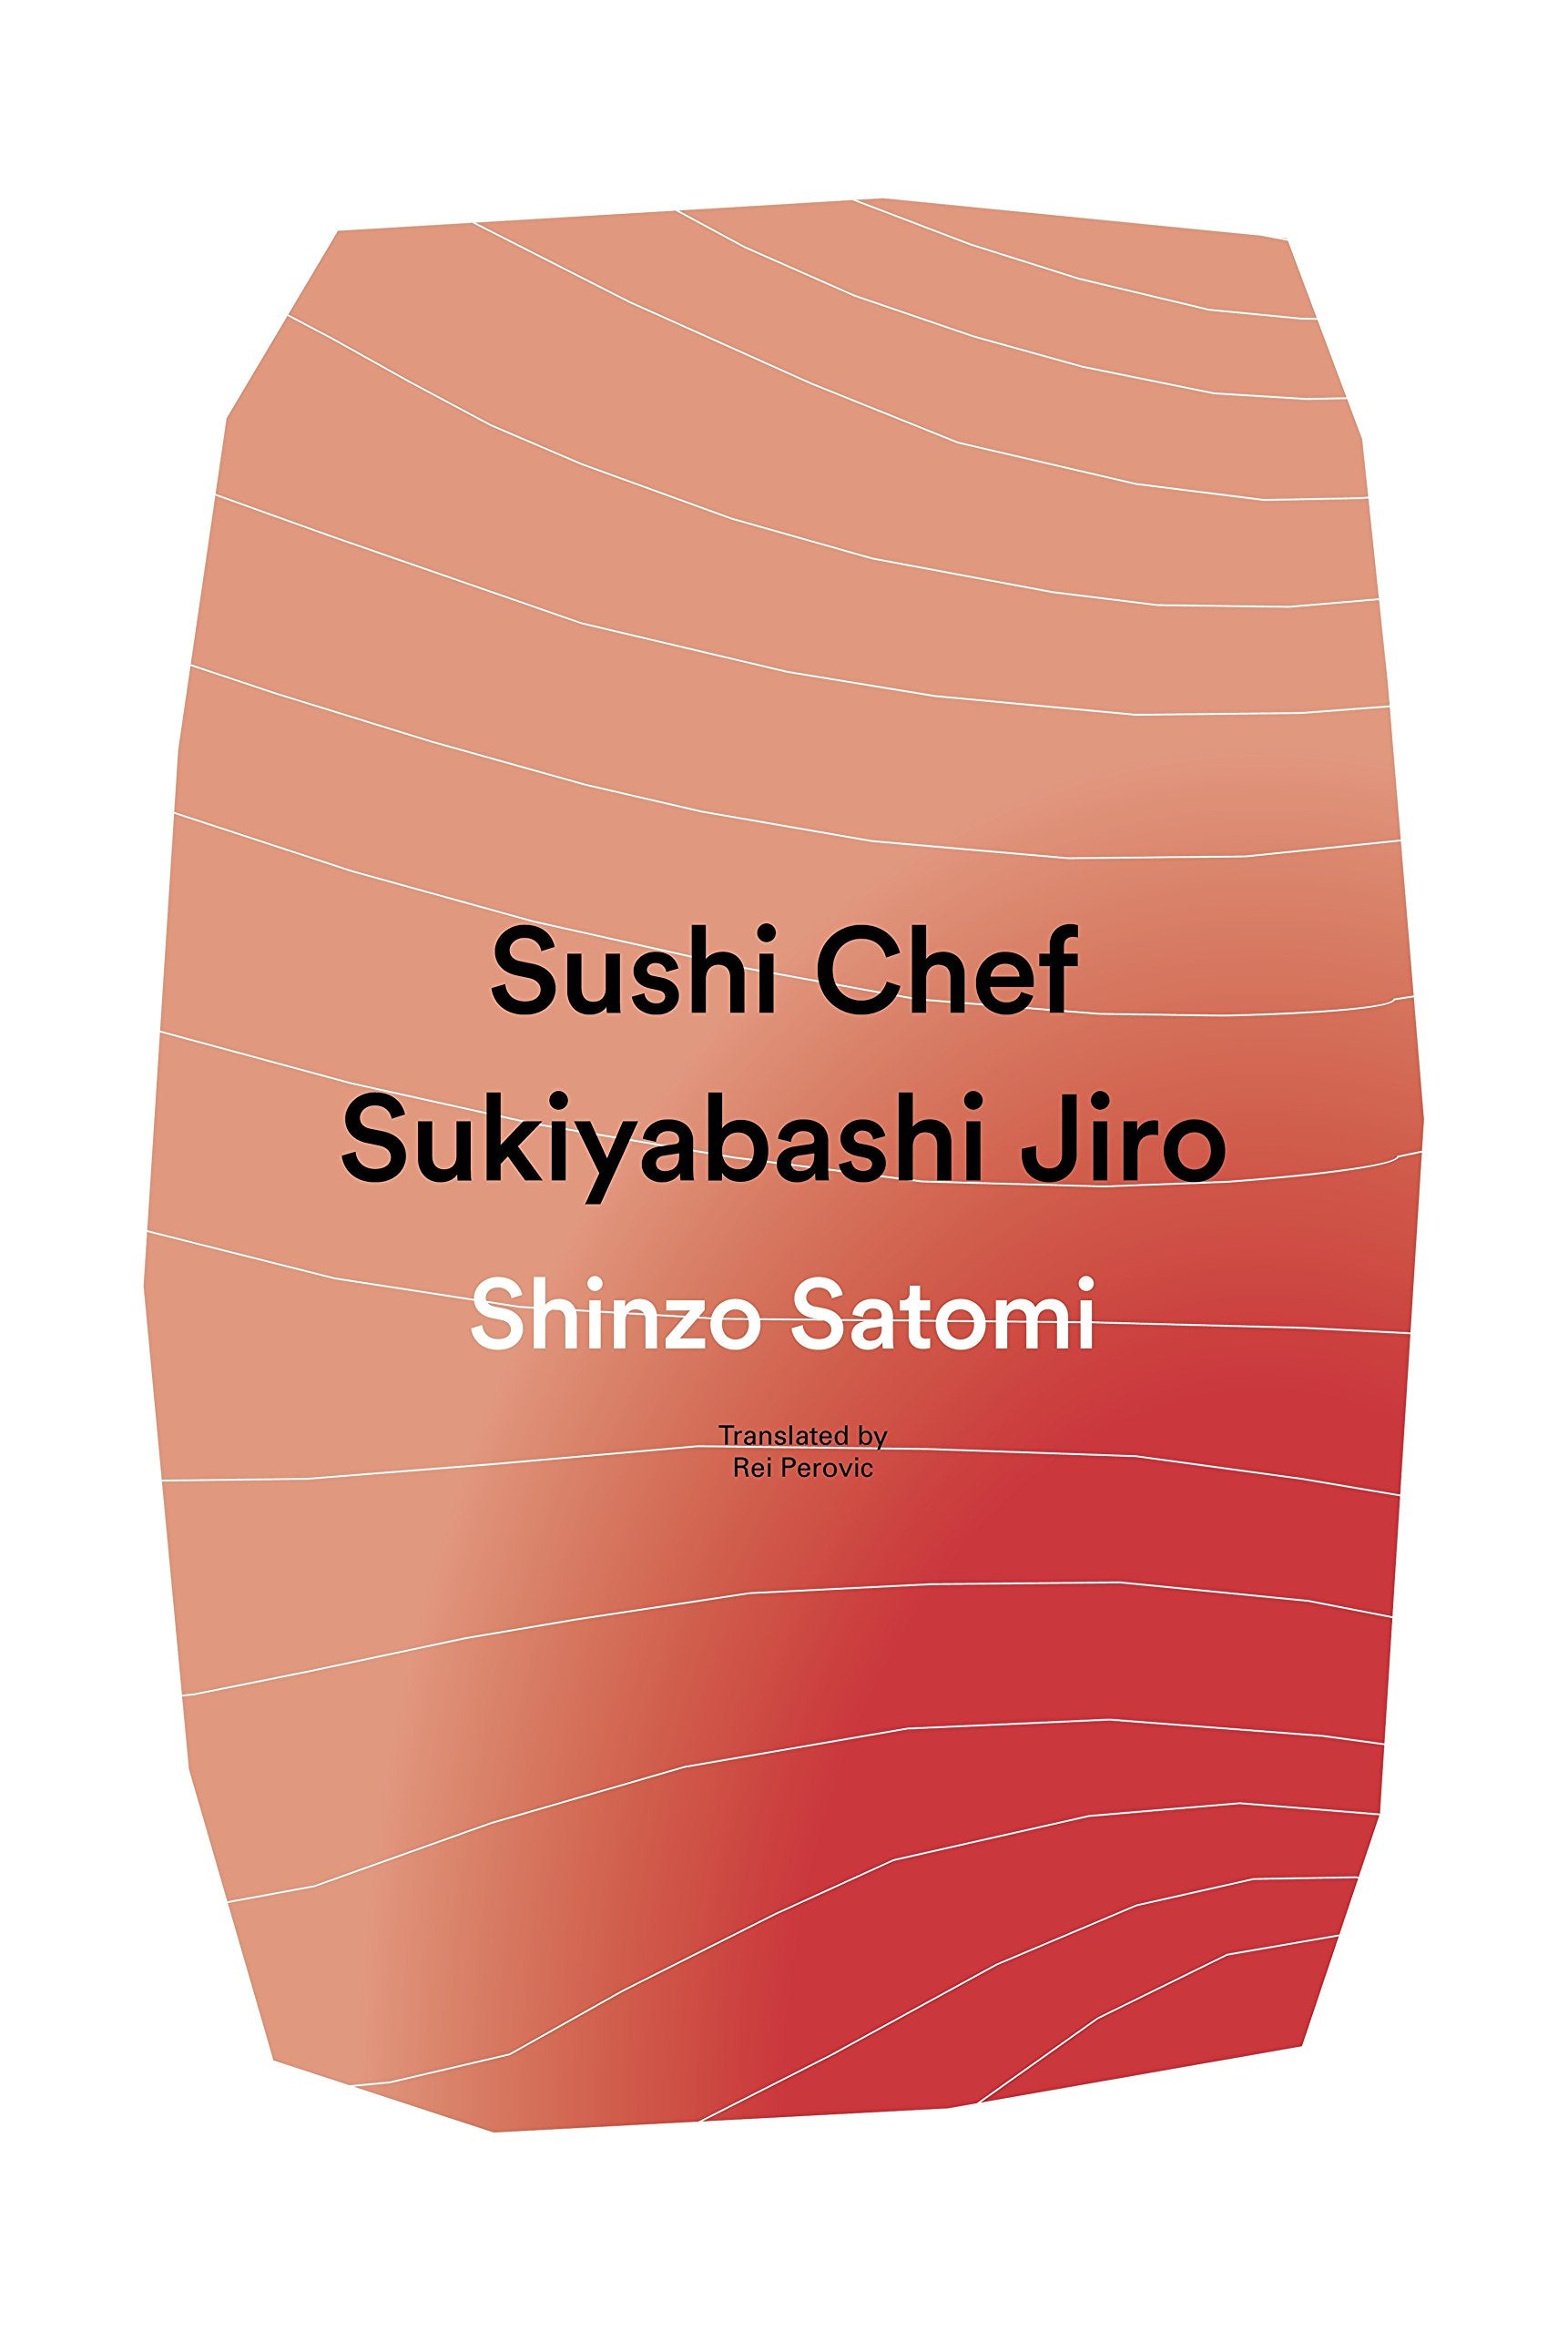 Sushi Chef: Sukiyabashi Jiro (Shinzo Satomi)